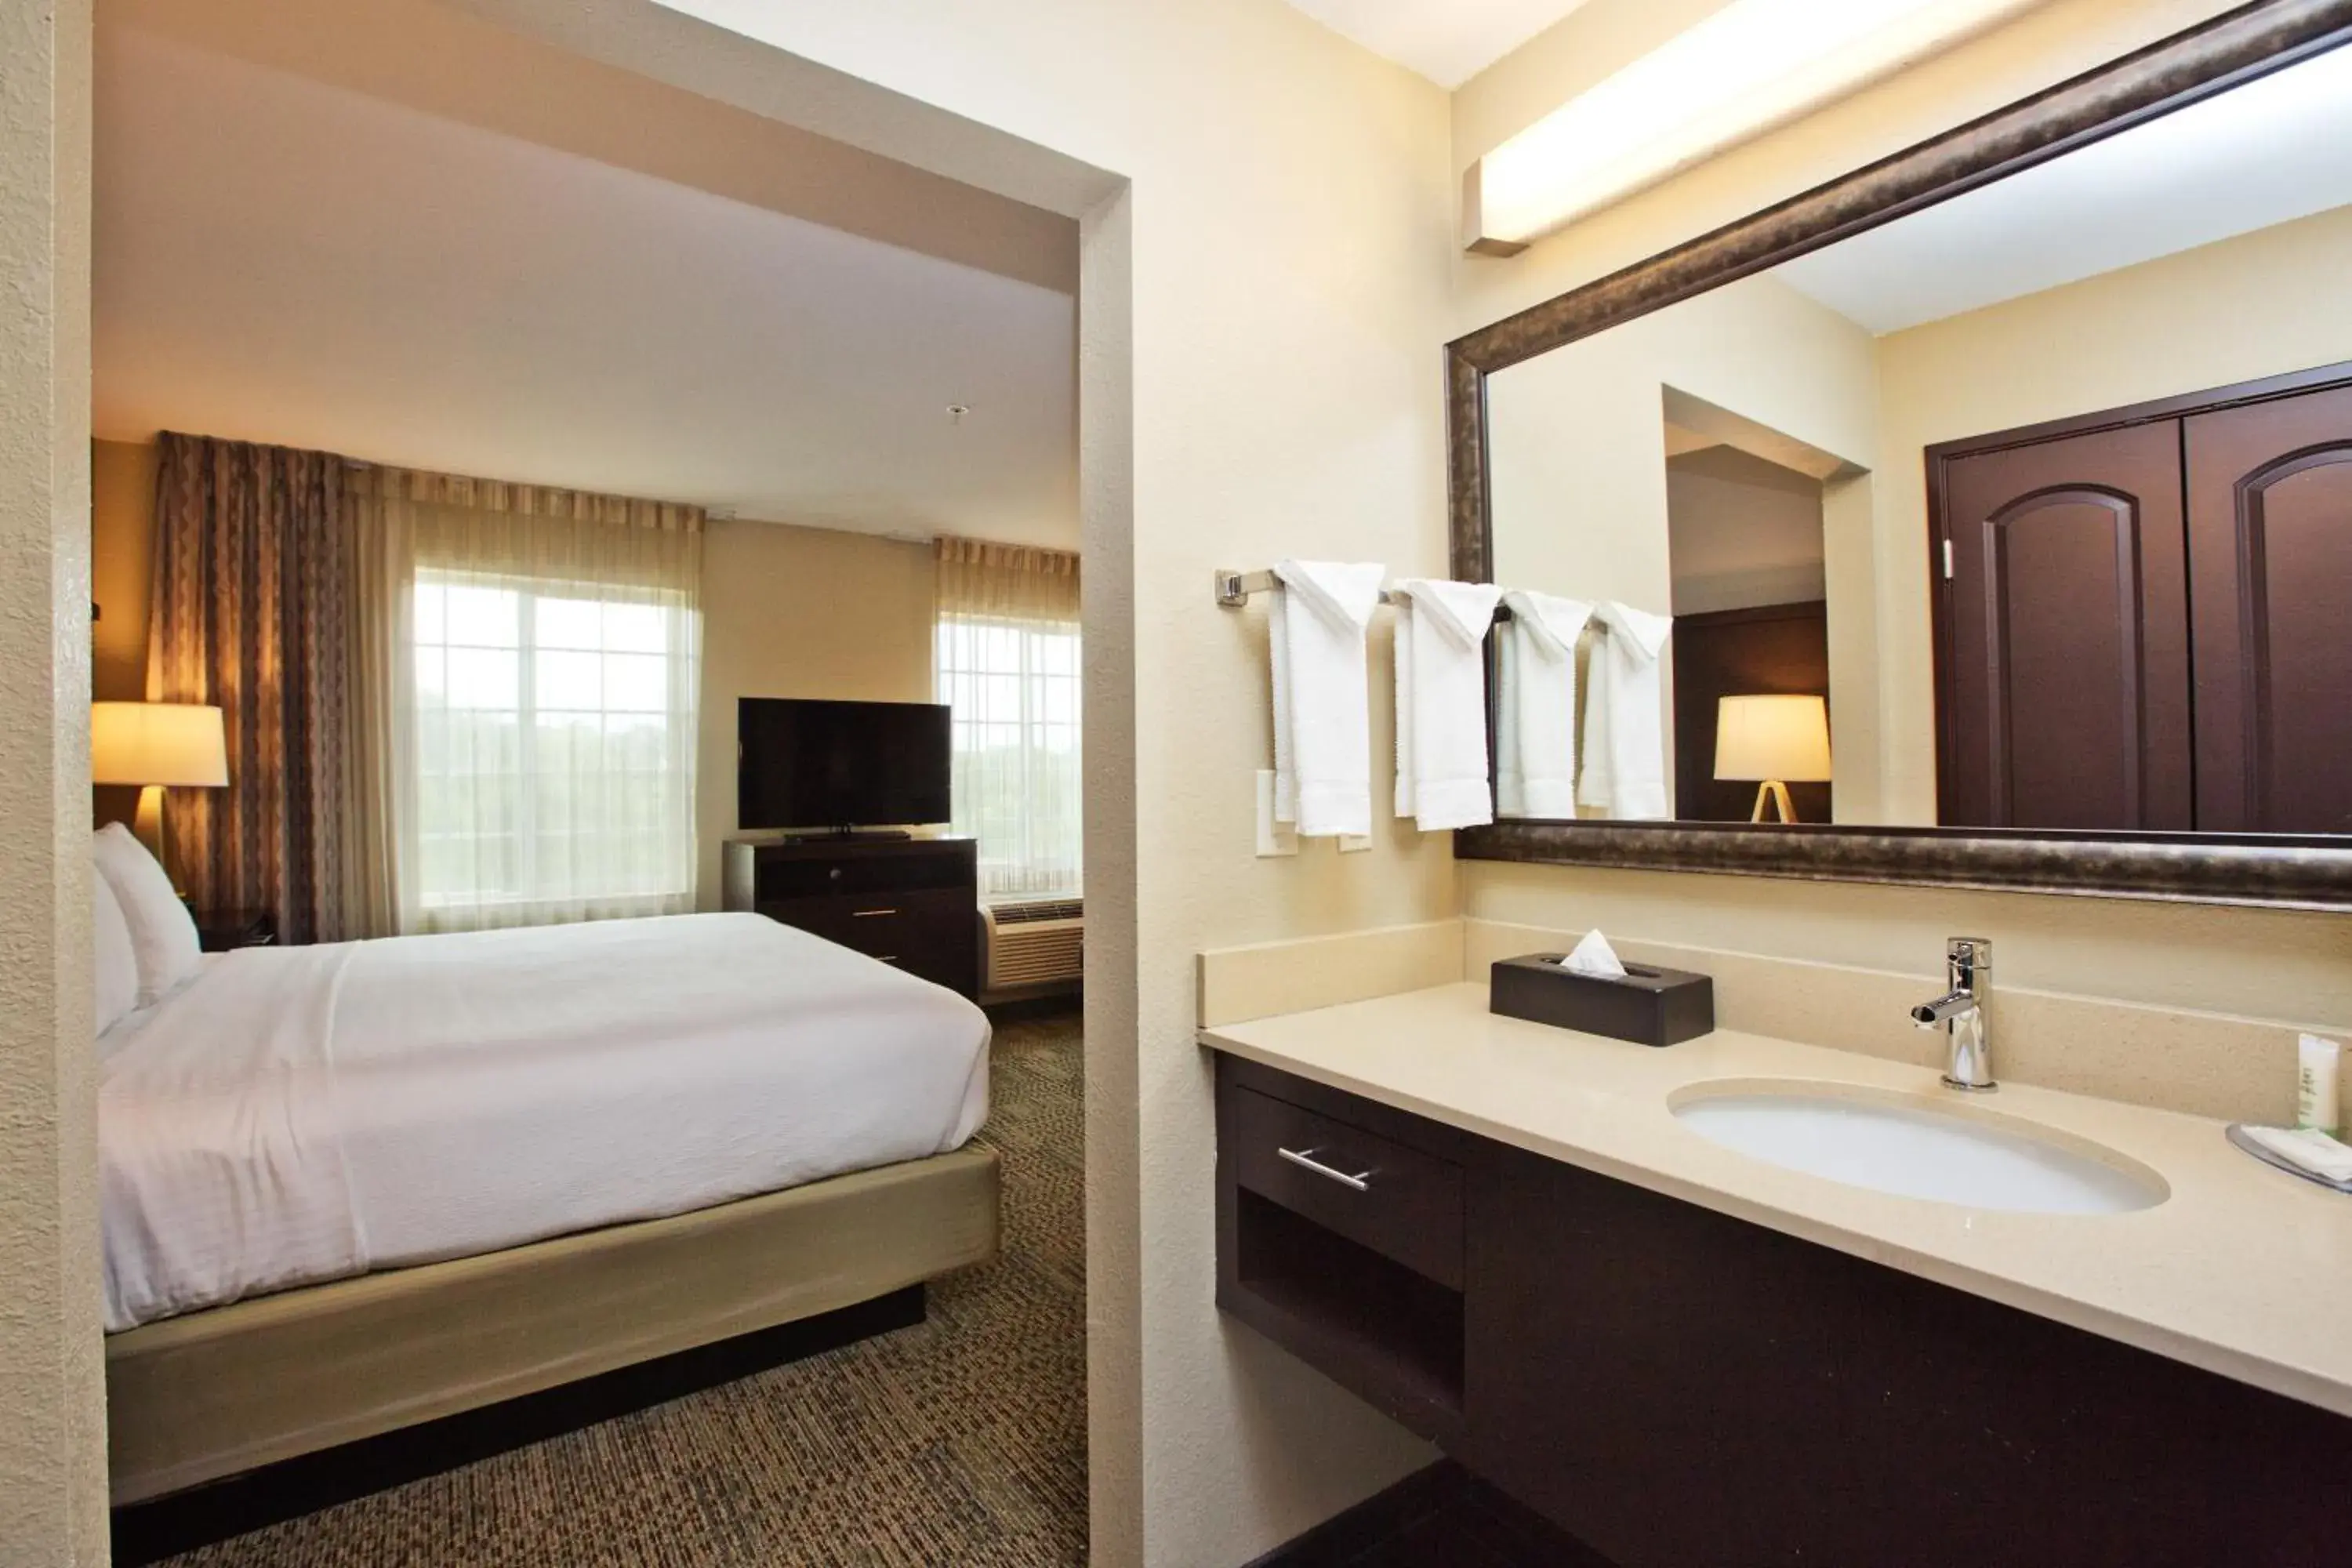 Bedroom, Bathroom in Staybridge Suites Austin South Interstate Hwy 35, an IHG Hotel